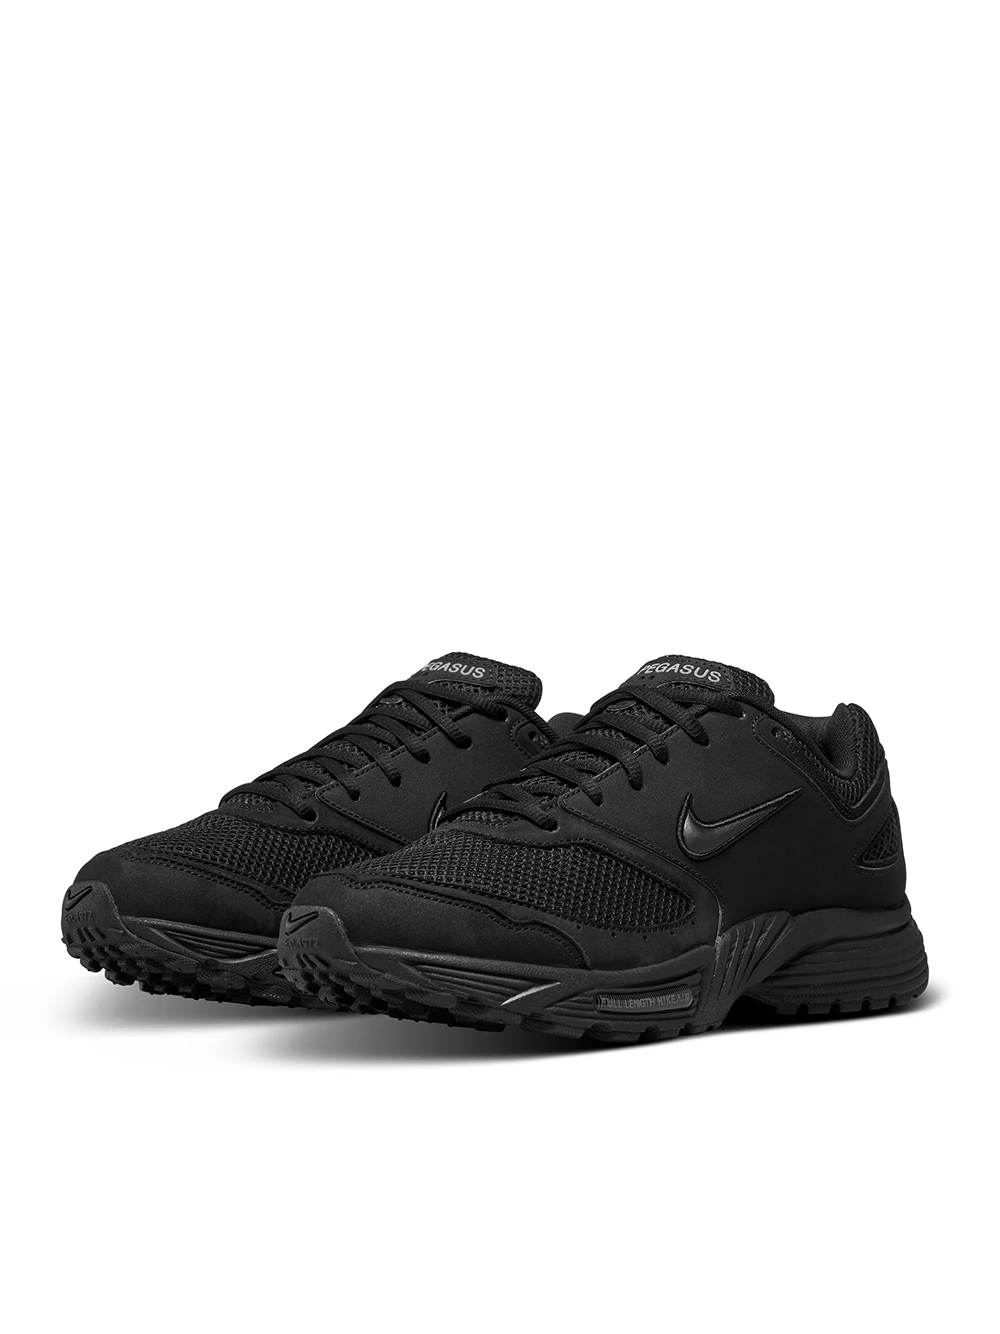 COMME-des-GARCONS-HOMME-PLUS-Nike-X-Homme-Plus-Sneaker-Black-3